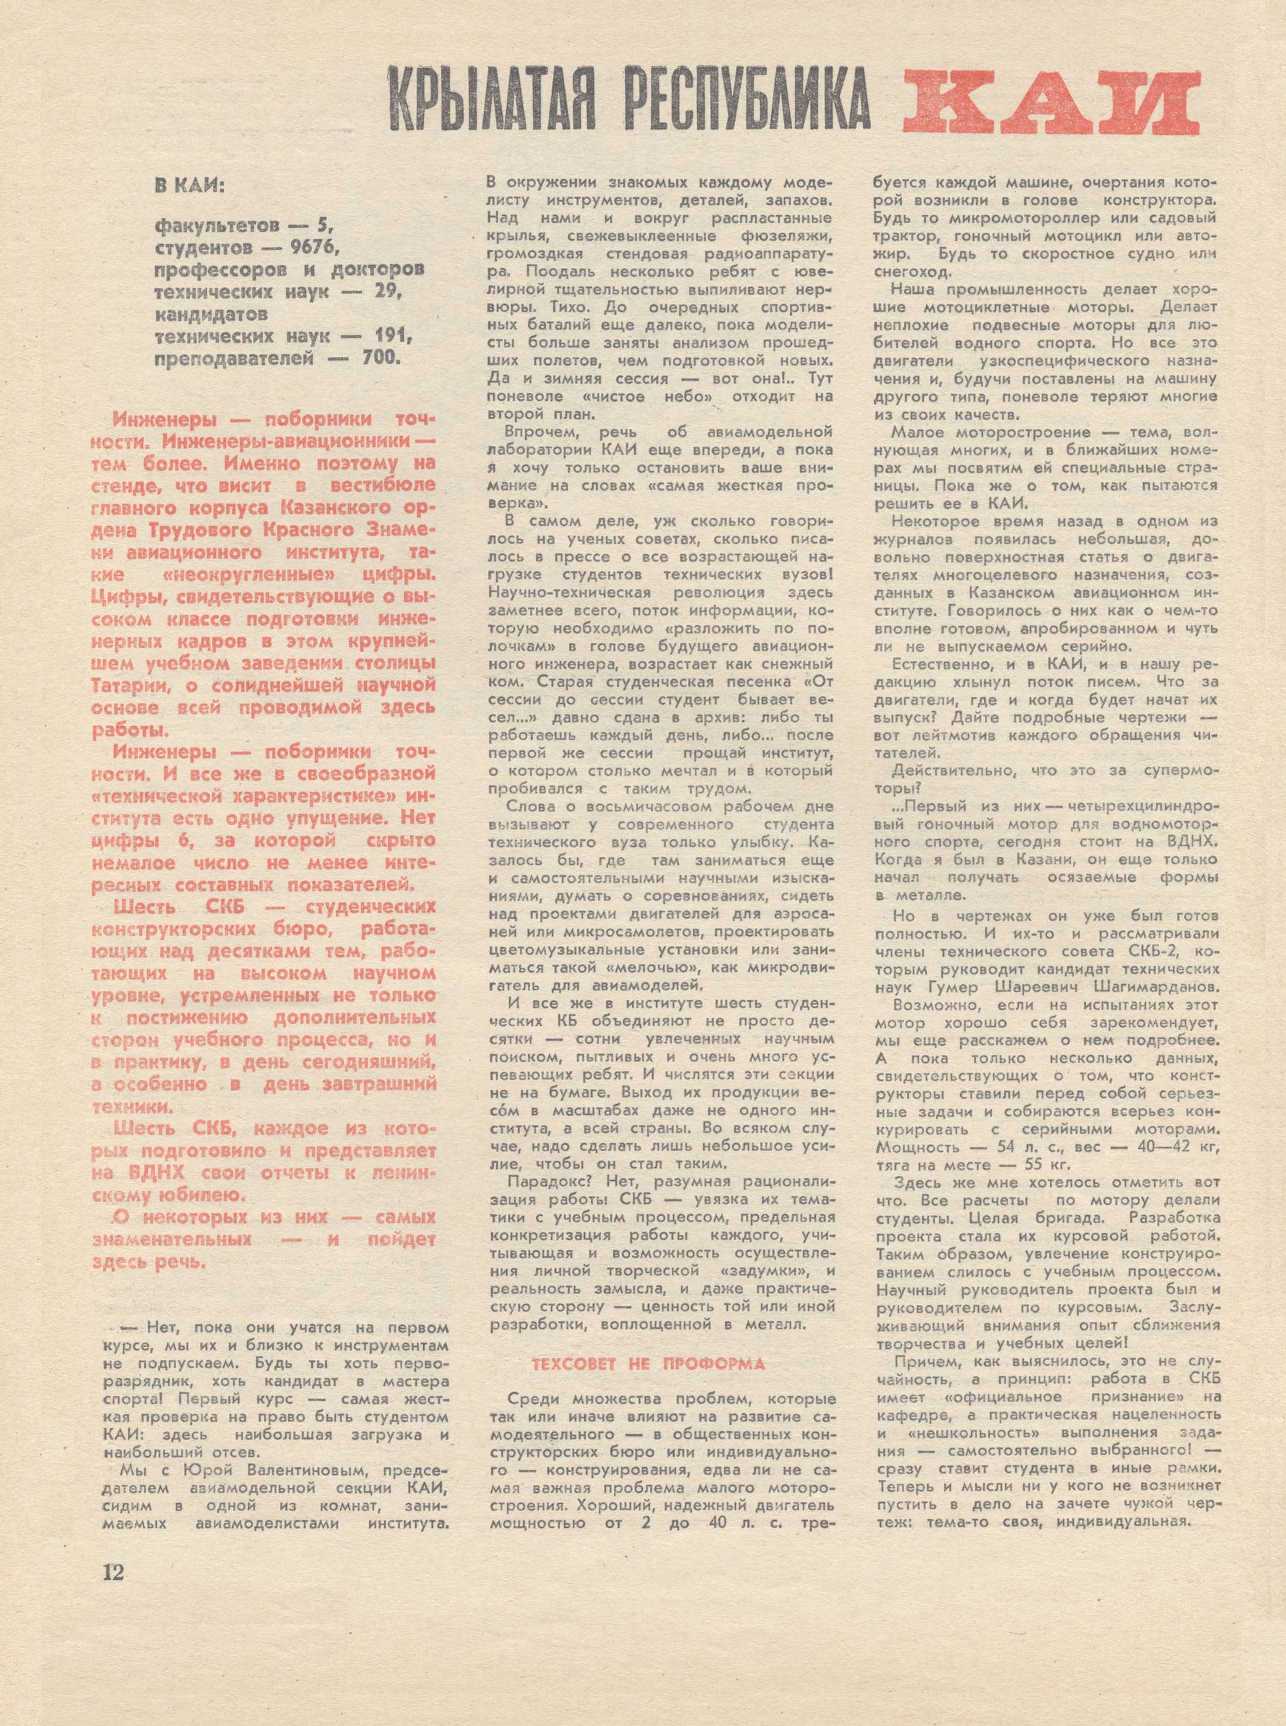 МК 4, 1970, 12 c.